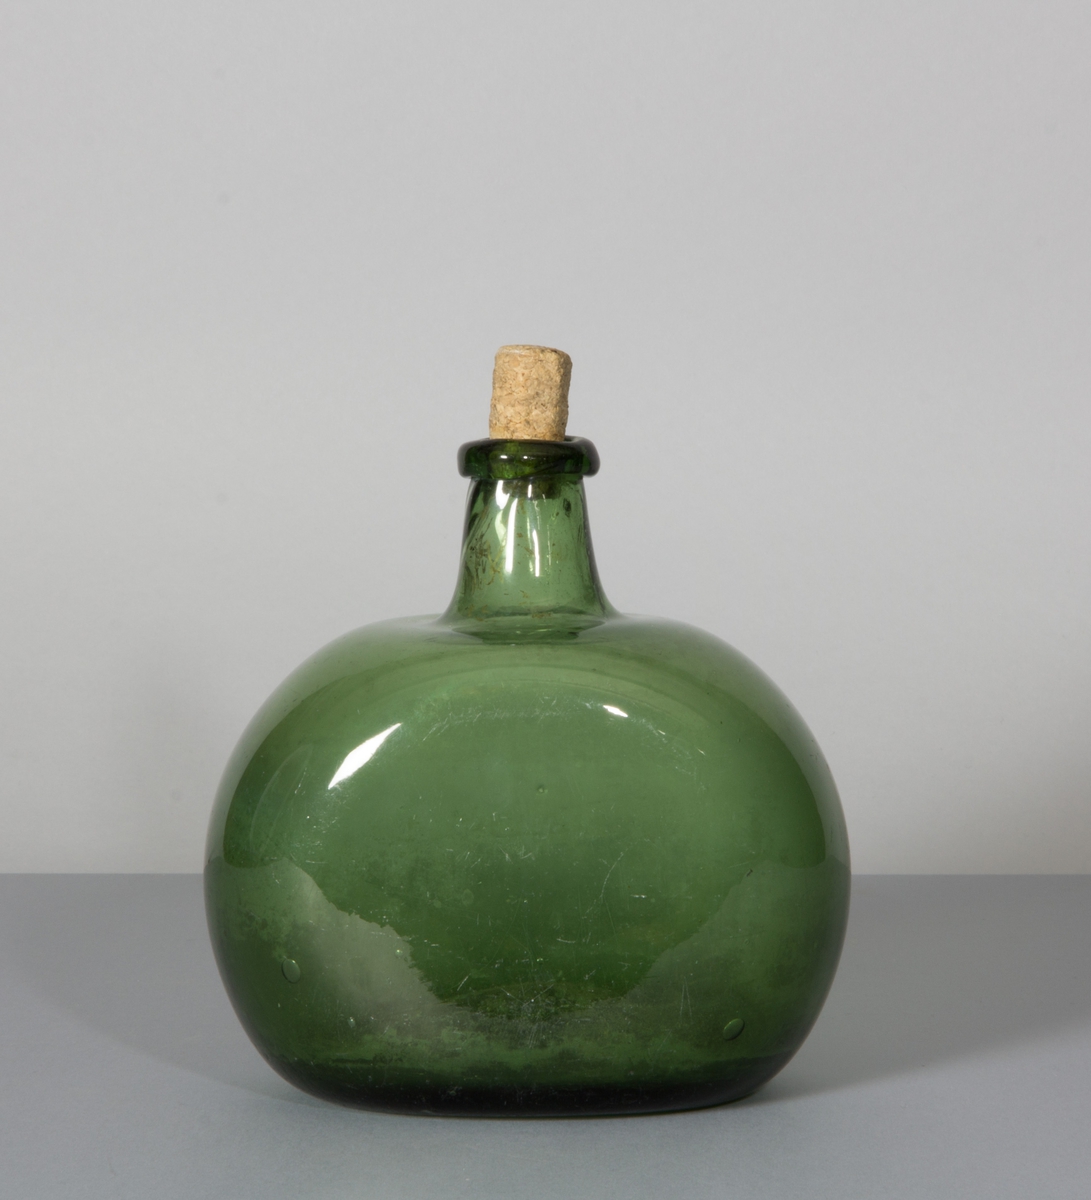 Flaska av glas, grön till färgen. Rundade sidor, hals med halsring och platt botten.